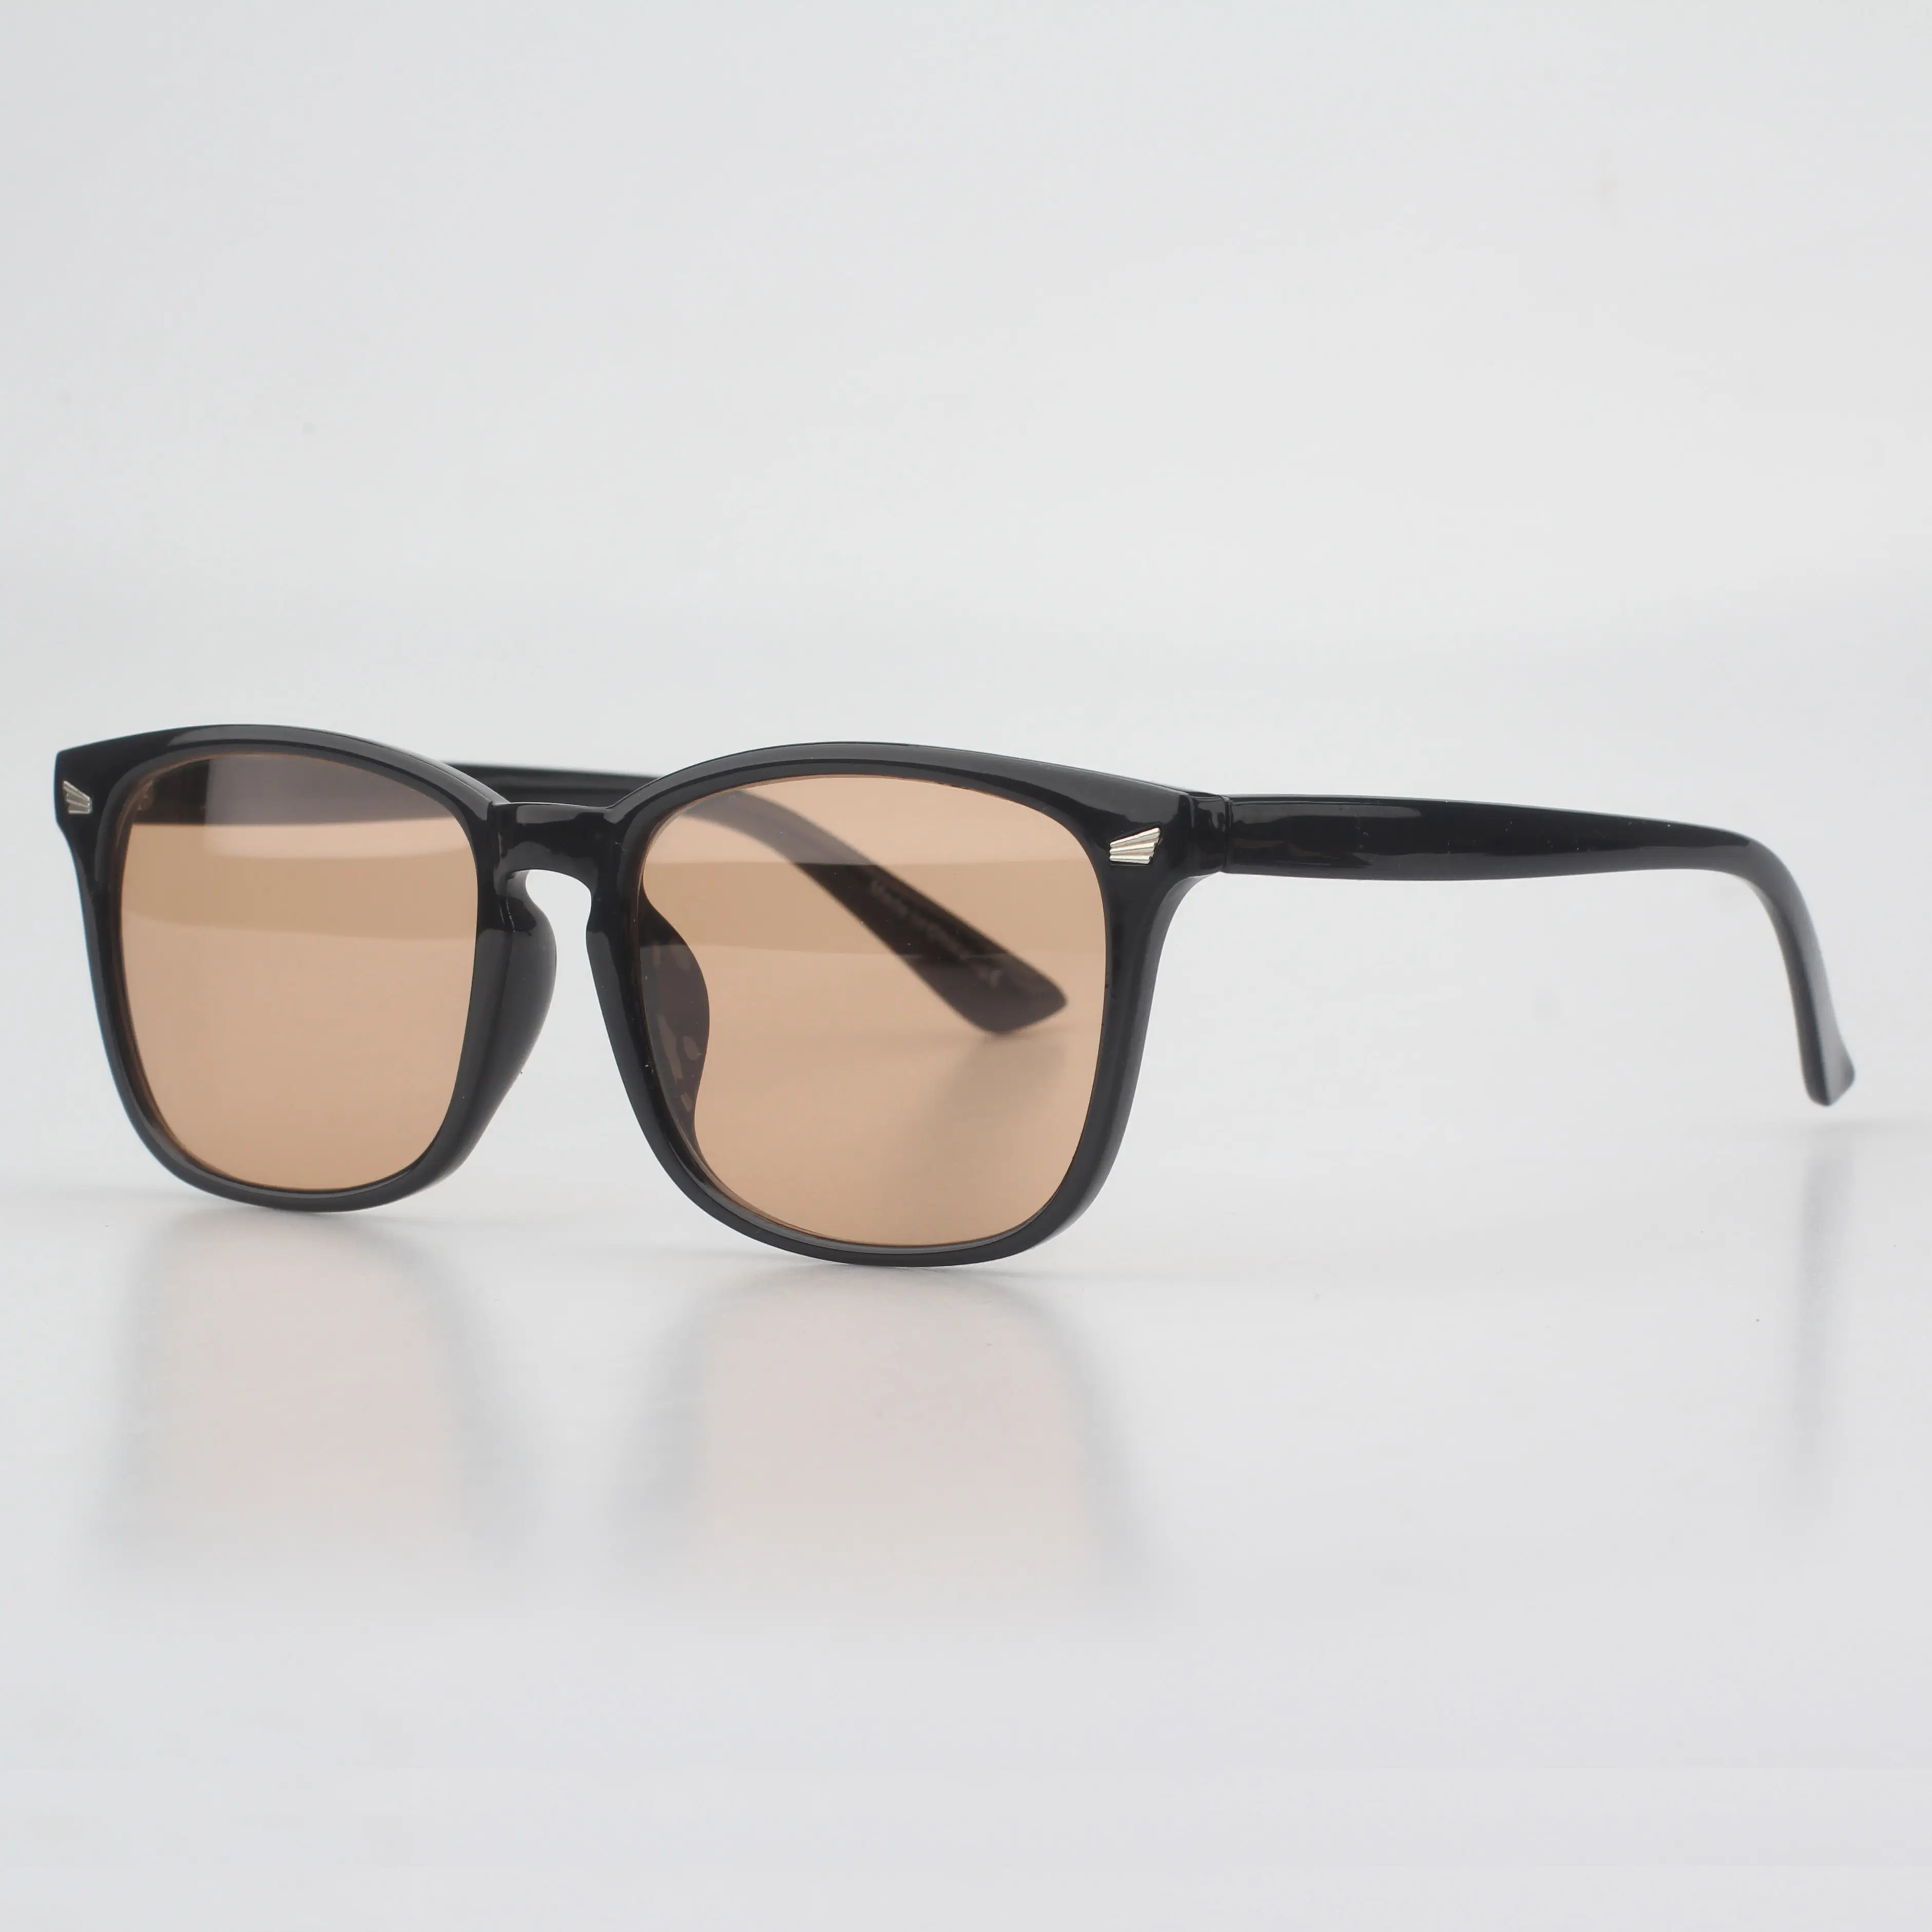 FL-41 светочувствительность очки для дневной свет чувствительность светобоязнь и мигрени с защитой от синего света очки